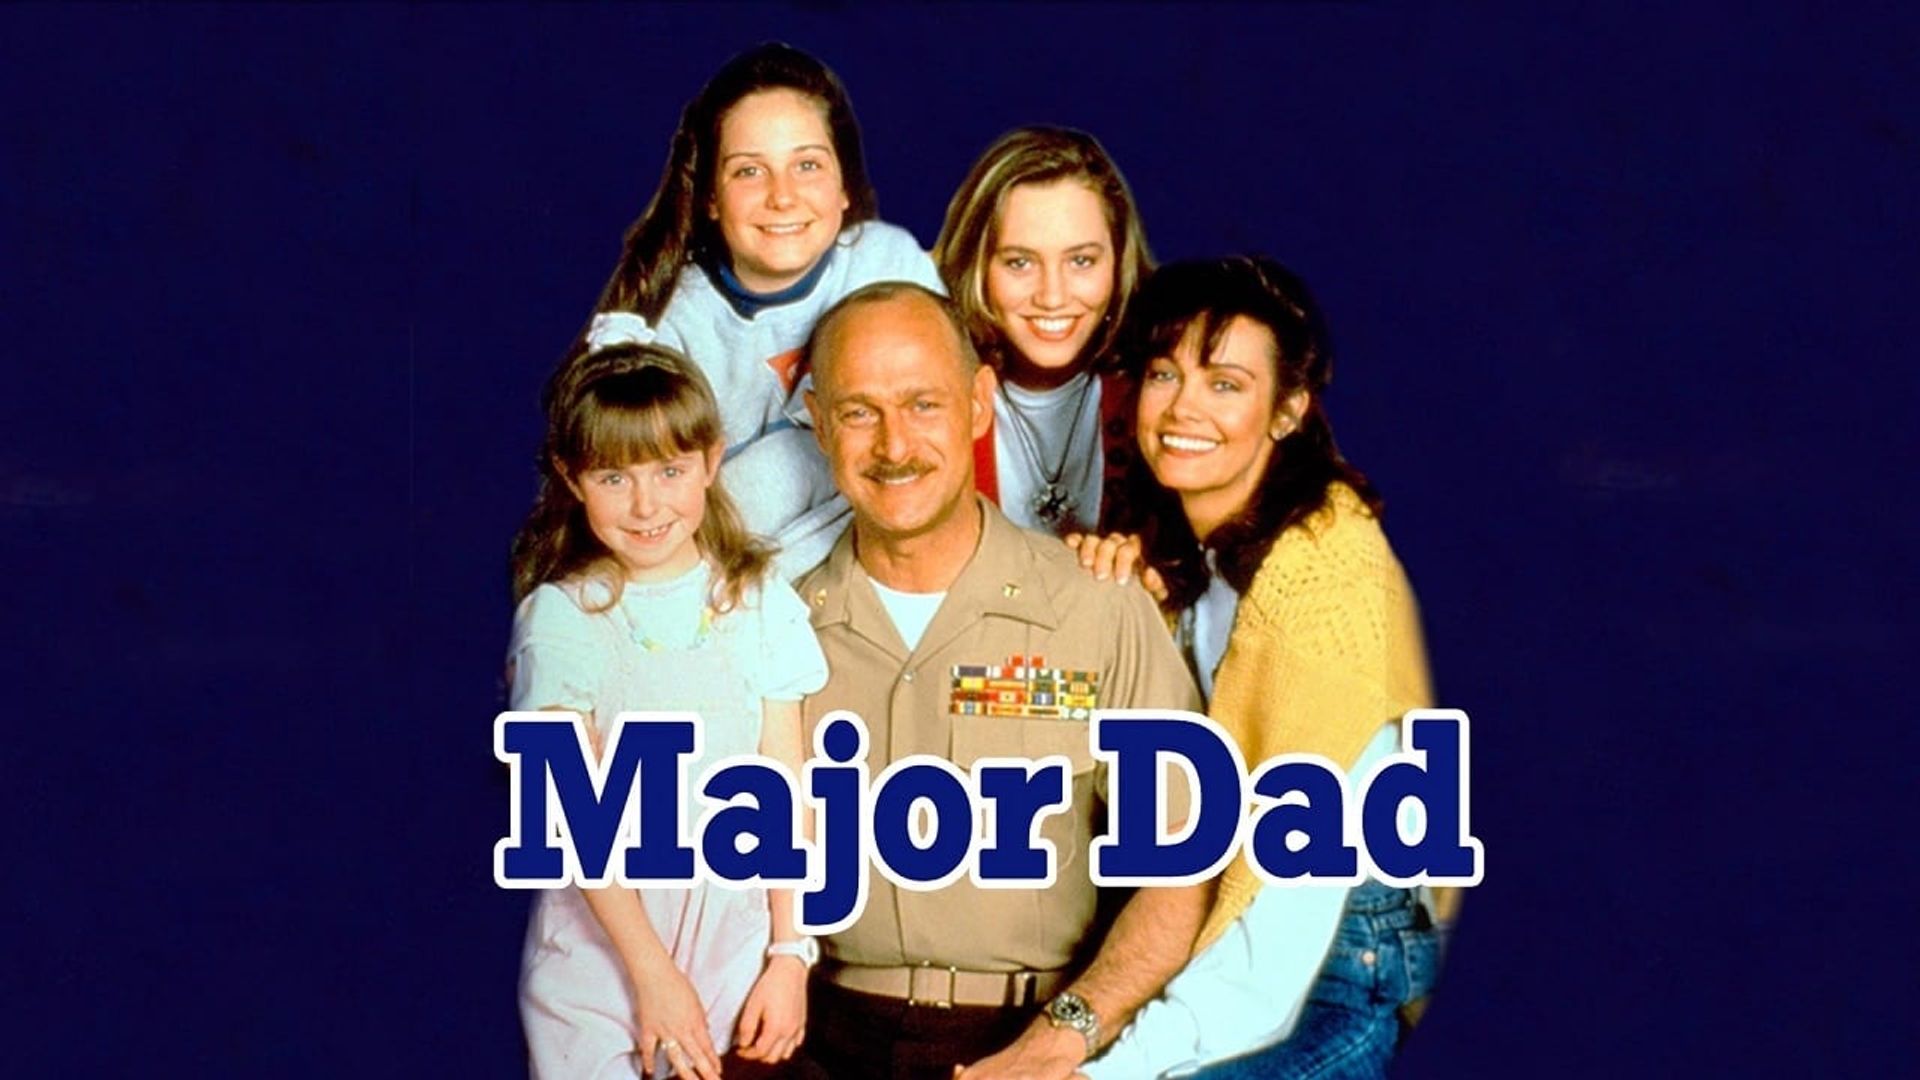 Major Dad Backdrop